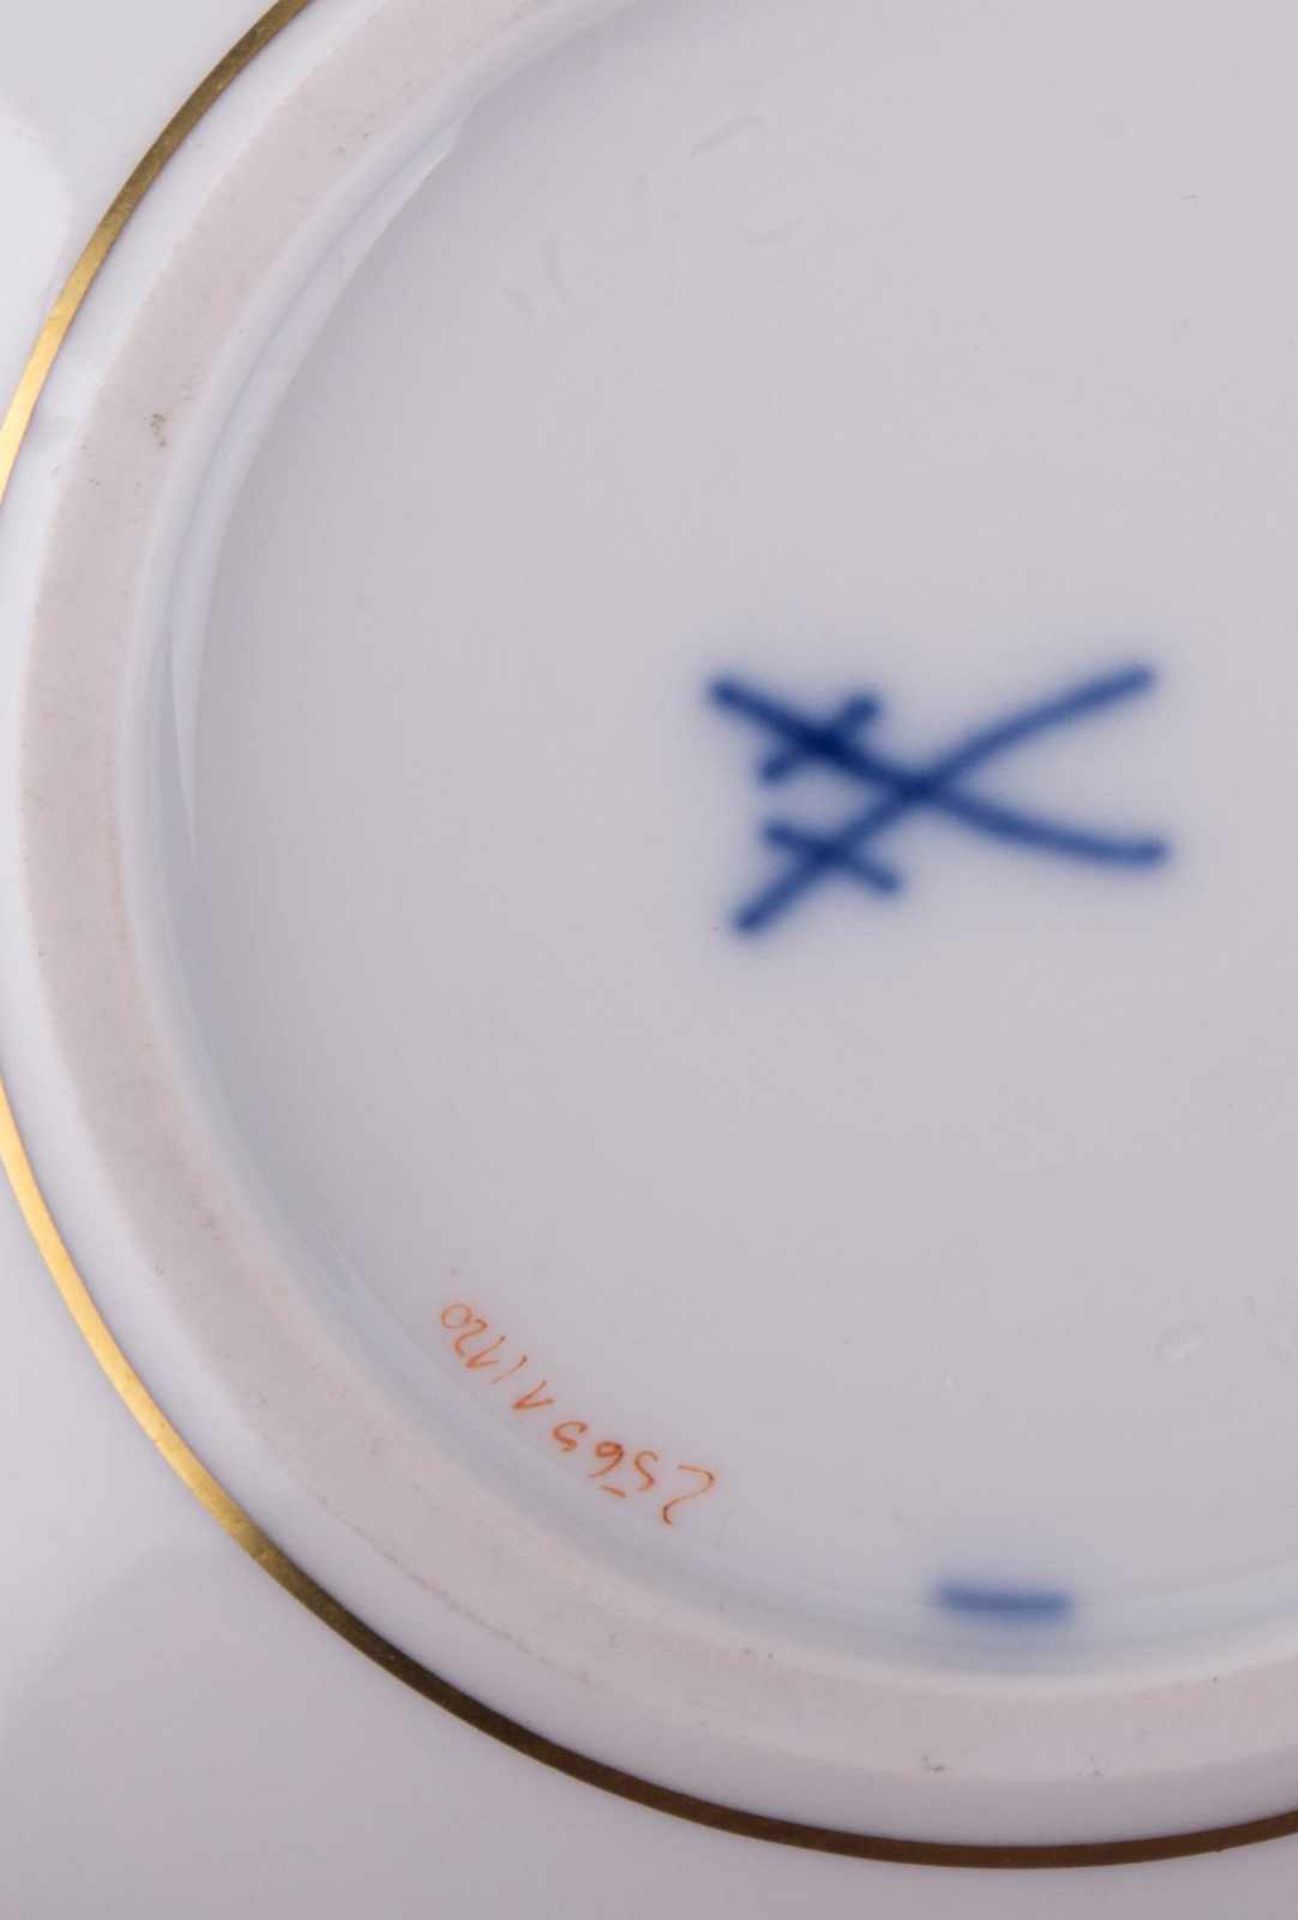 Deckeldose Meissen / Lidded bowl, Meissen - Dekor Schlossvase, Goldrand, blaue [...] - Bild 10 aus 10